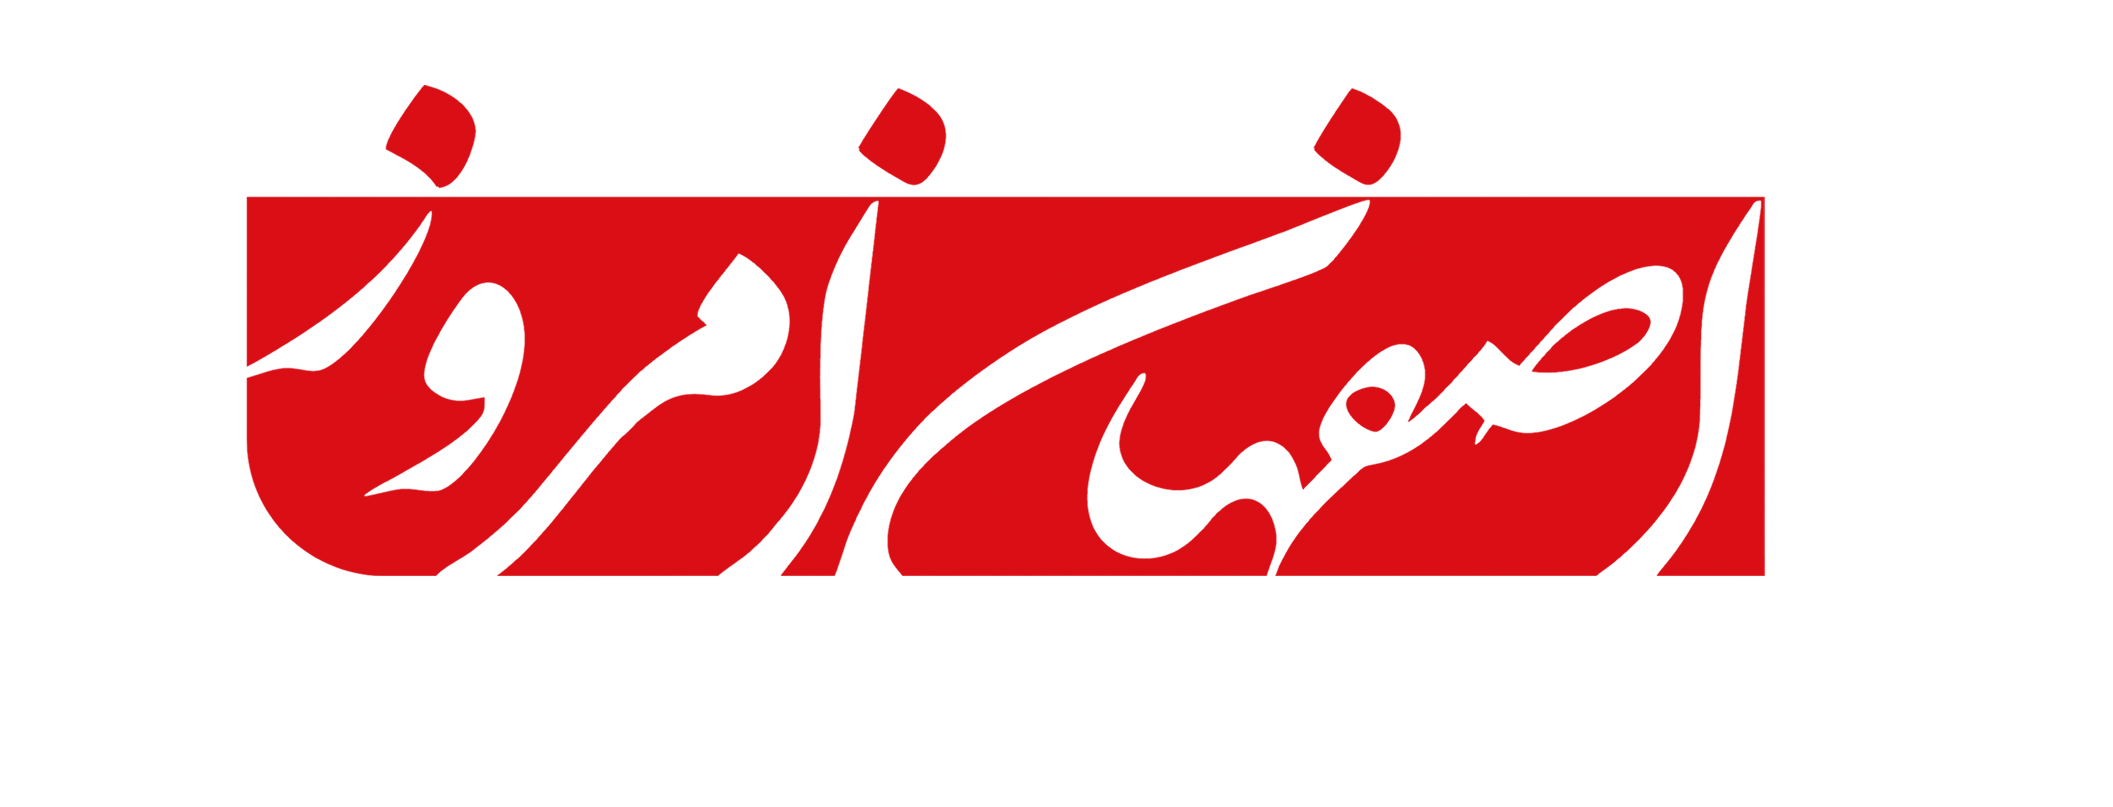 اصفهان امروز